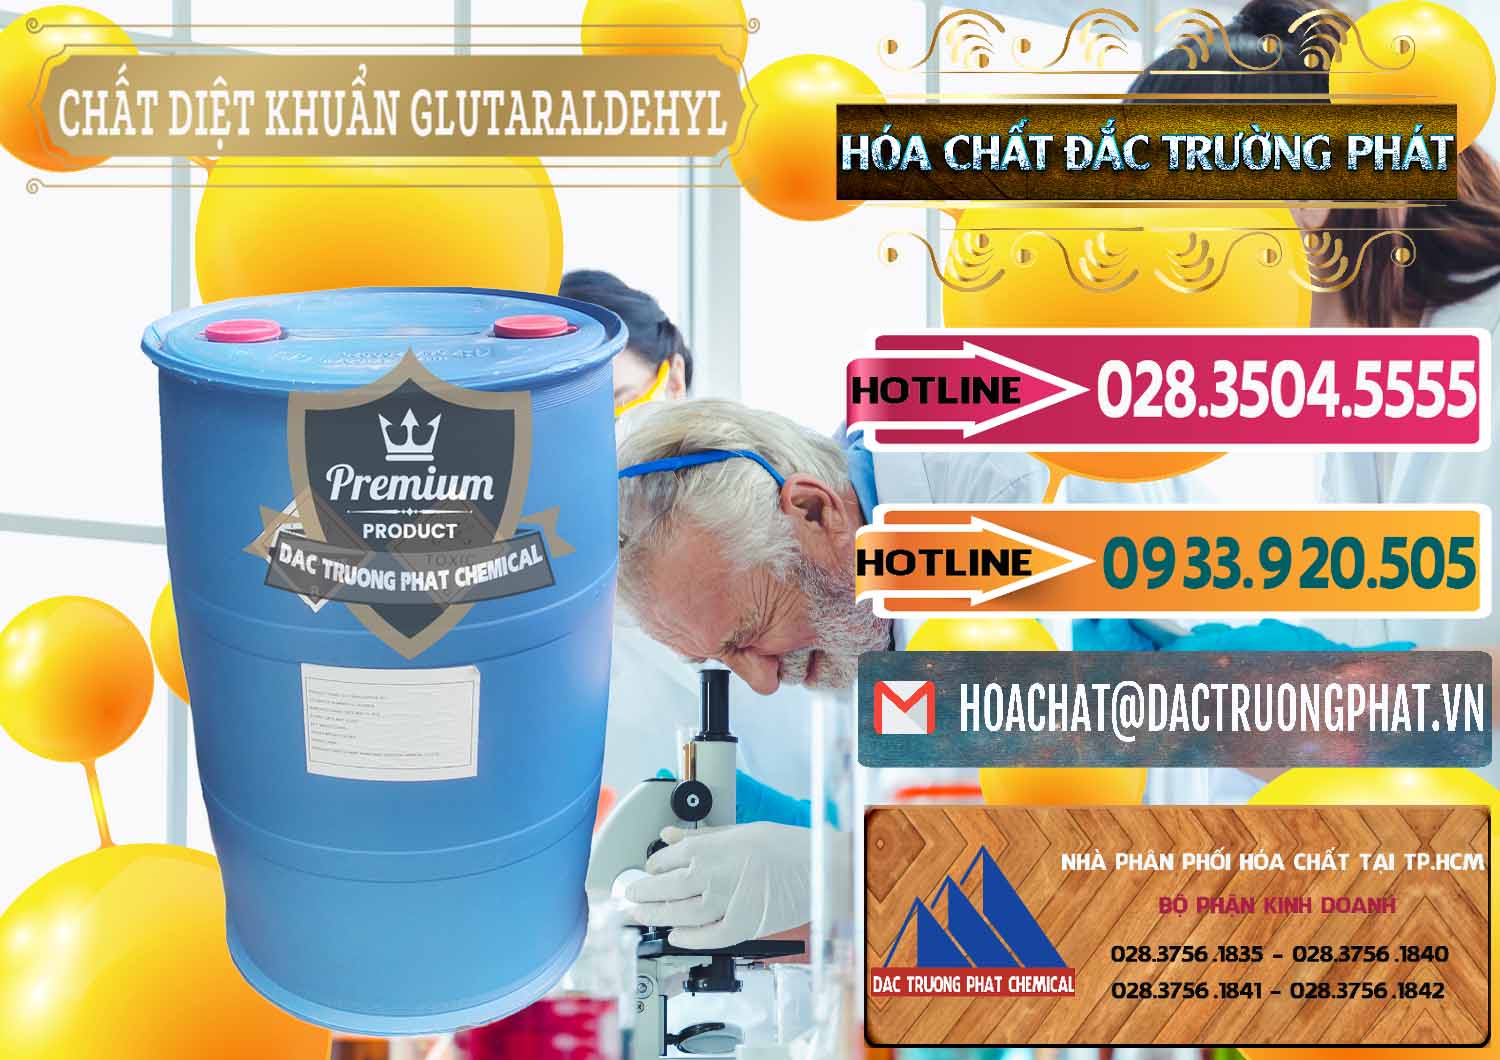 Cty bán & phân phối Glutaraldehyde 50% Đức Germany - 0314 - Cung ứng & phân phối hóa chất tại TP.HCM - dactruongphat.vn